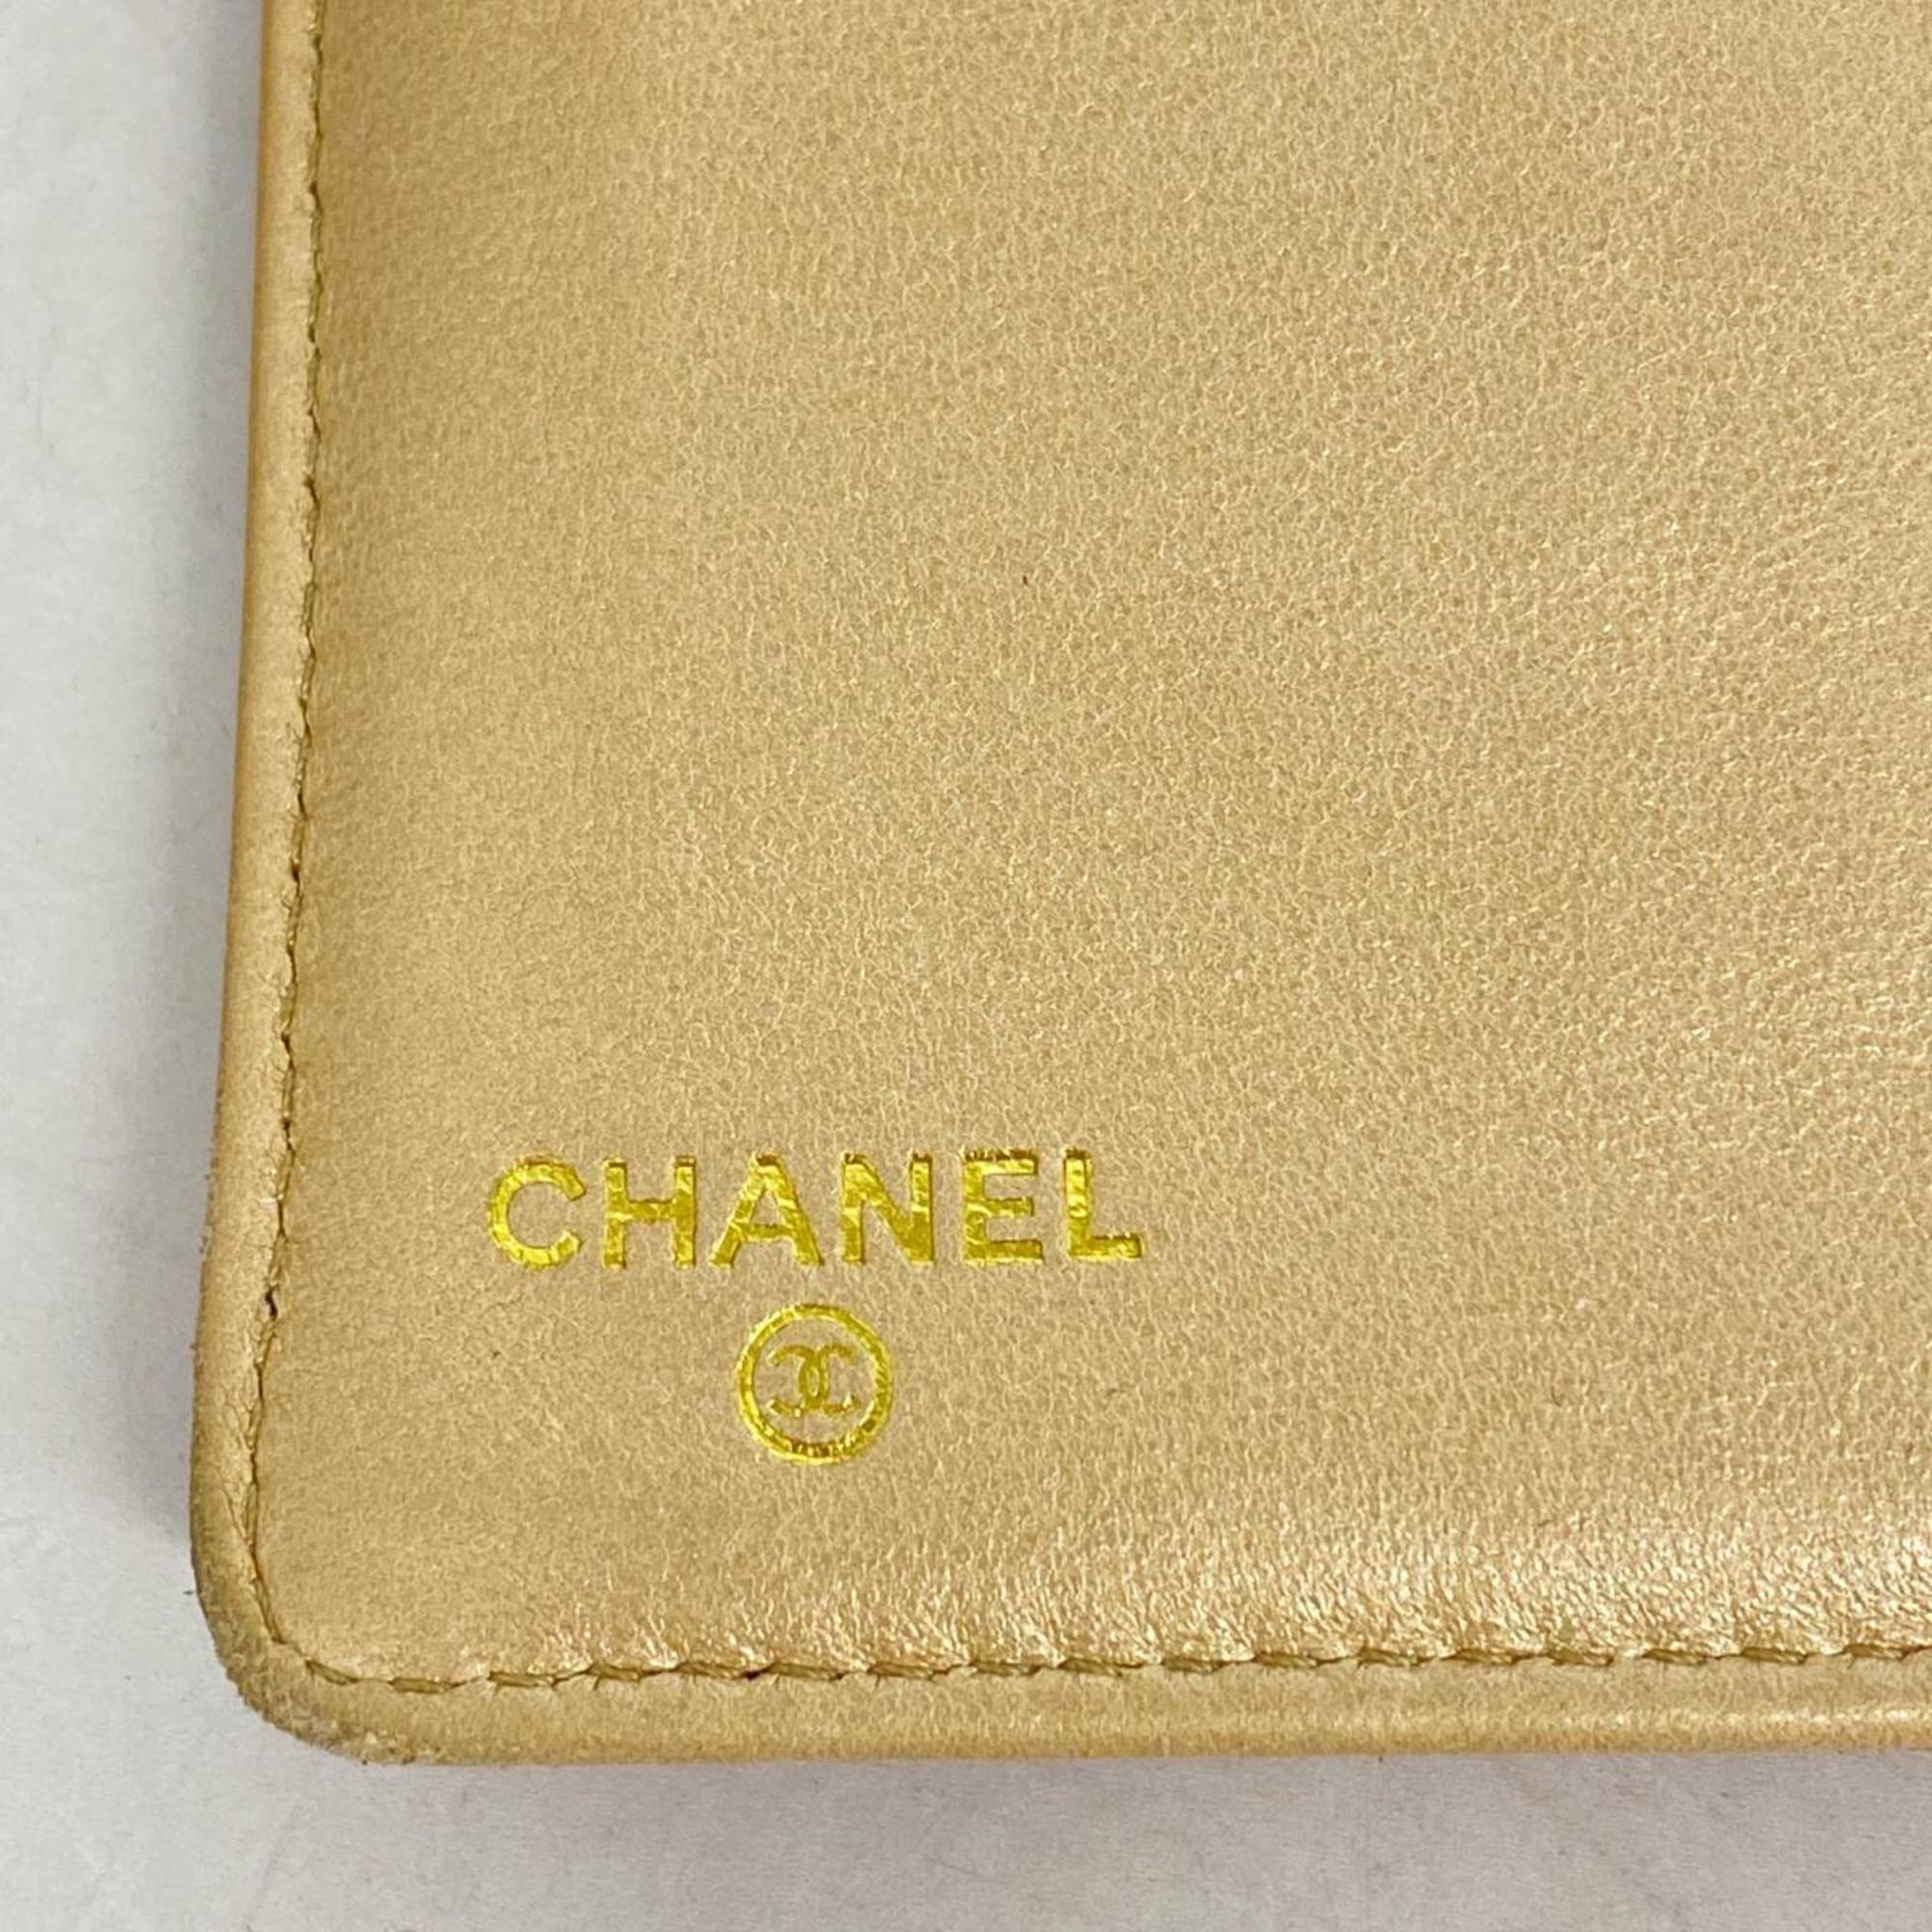 シャネル(Chanel) シャネル 長財布 カメリア レザー ピンク シャンパン  レディース